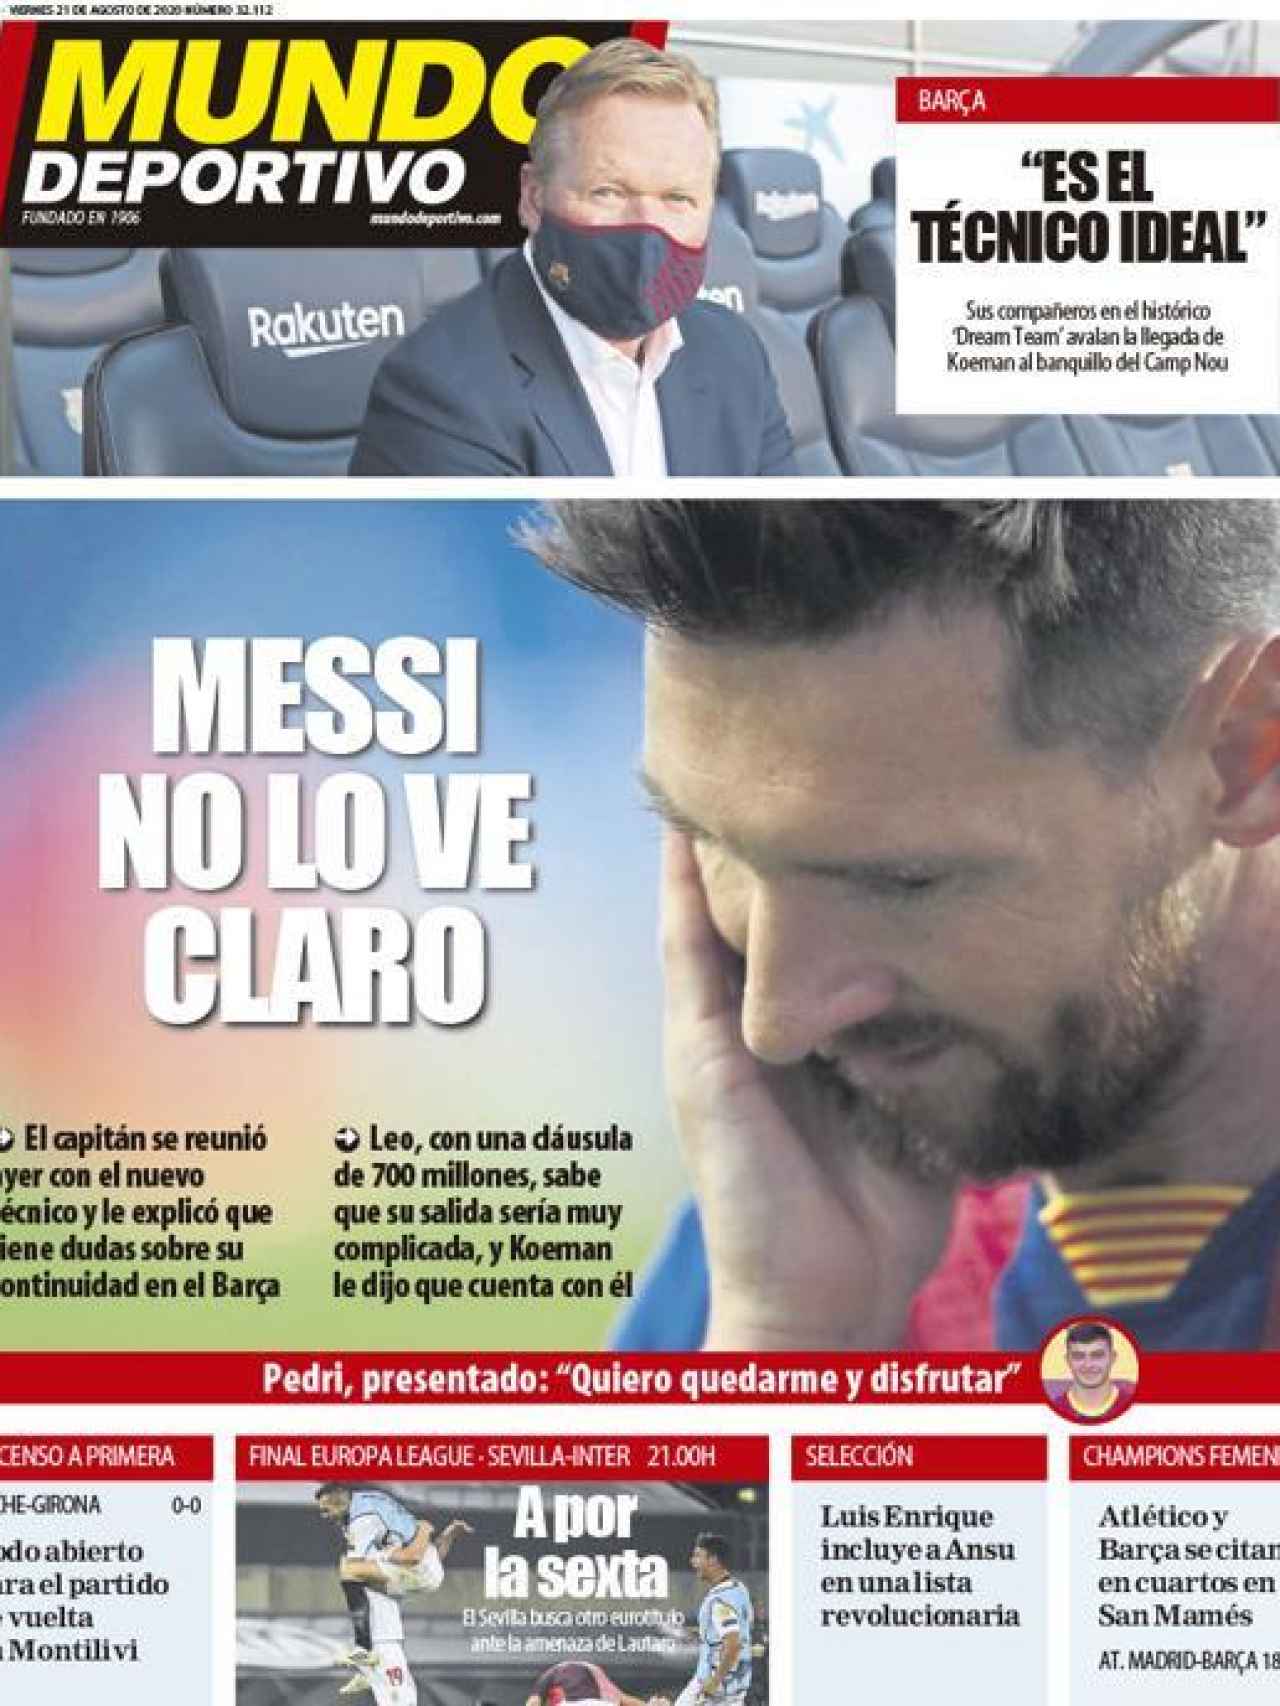 La portada del diario Mundo Deportivo (21/08/2020)